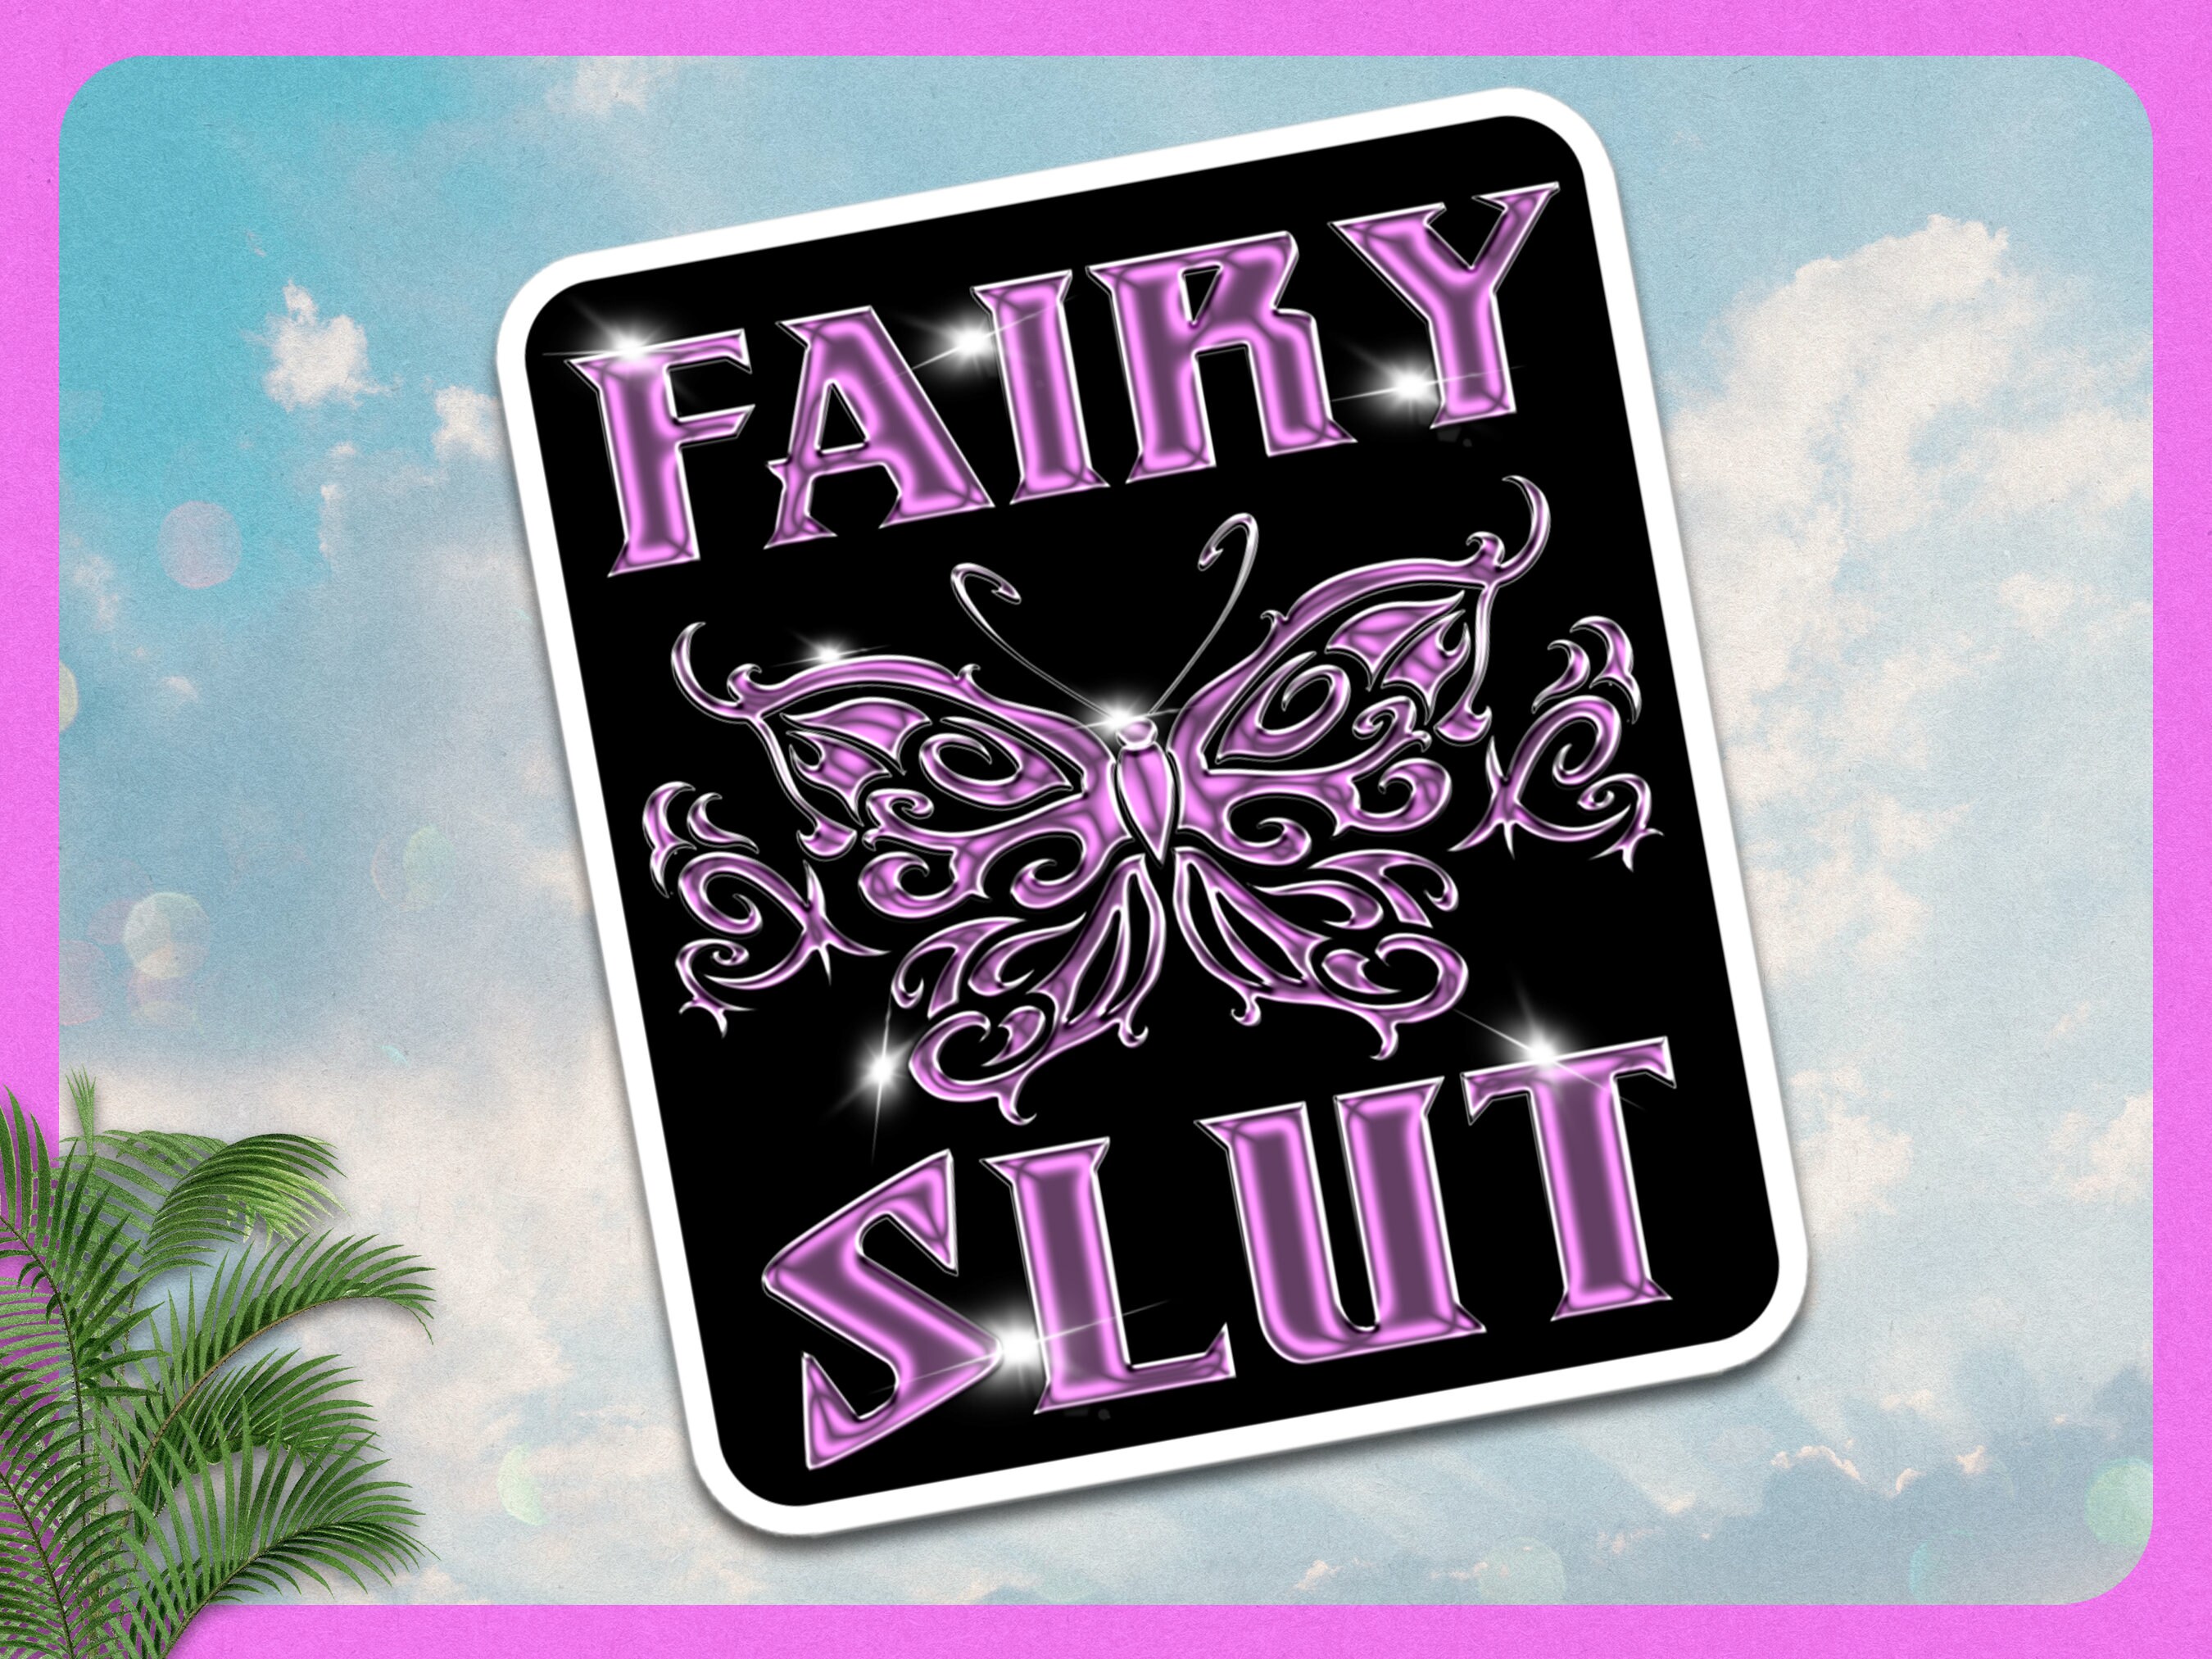 Fairy Slut